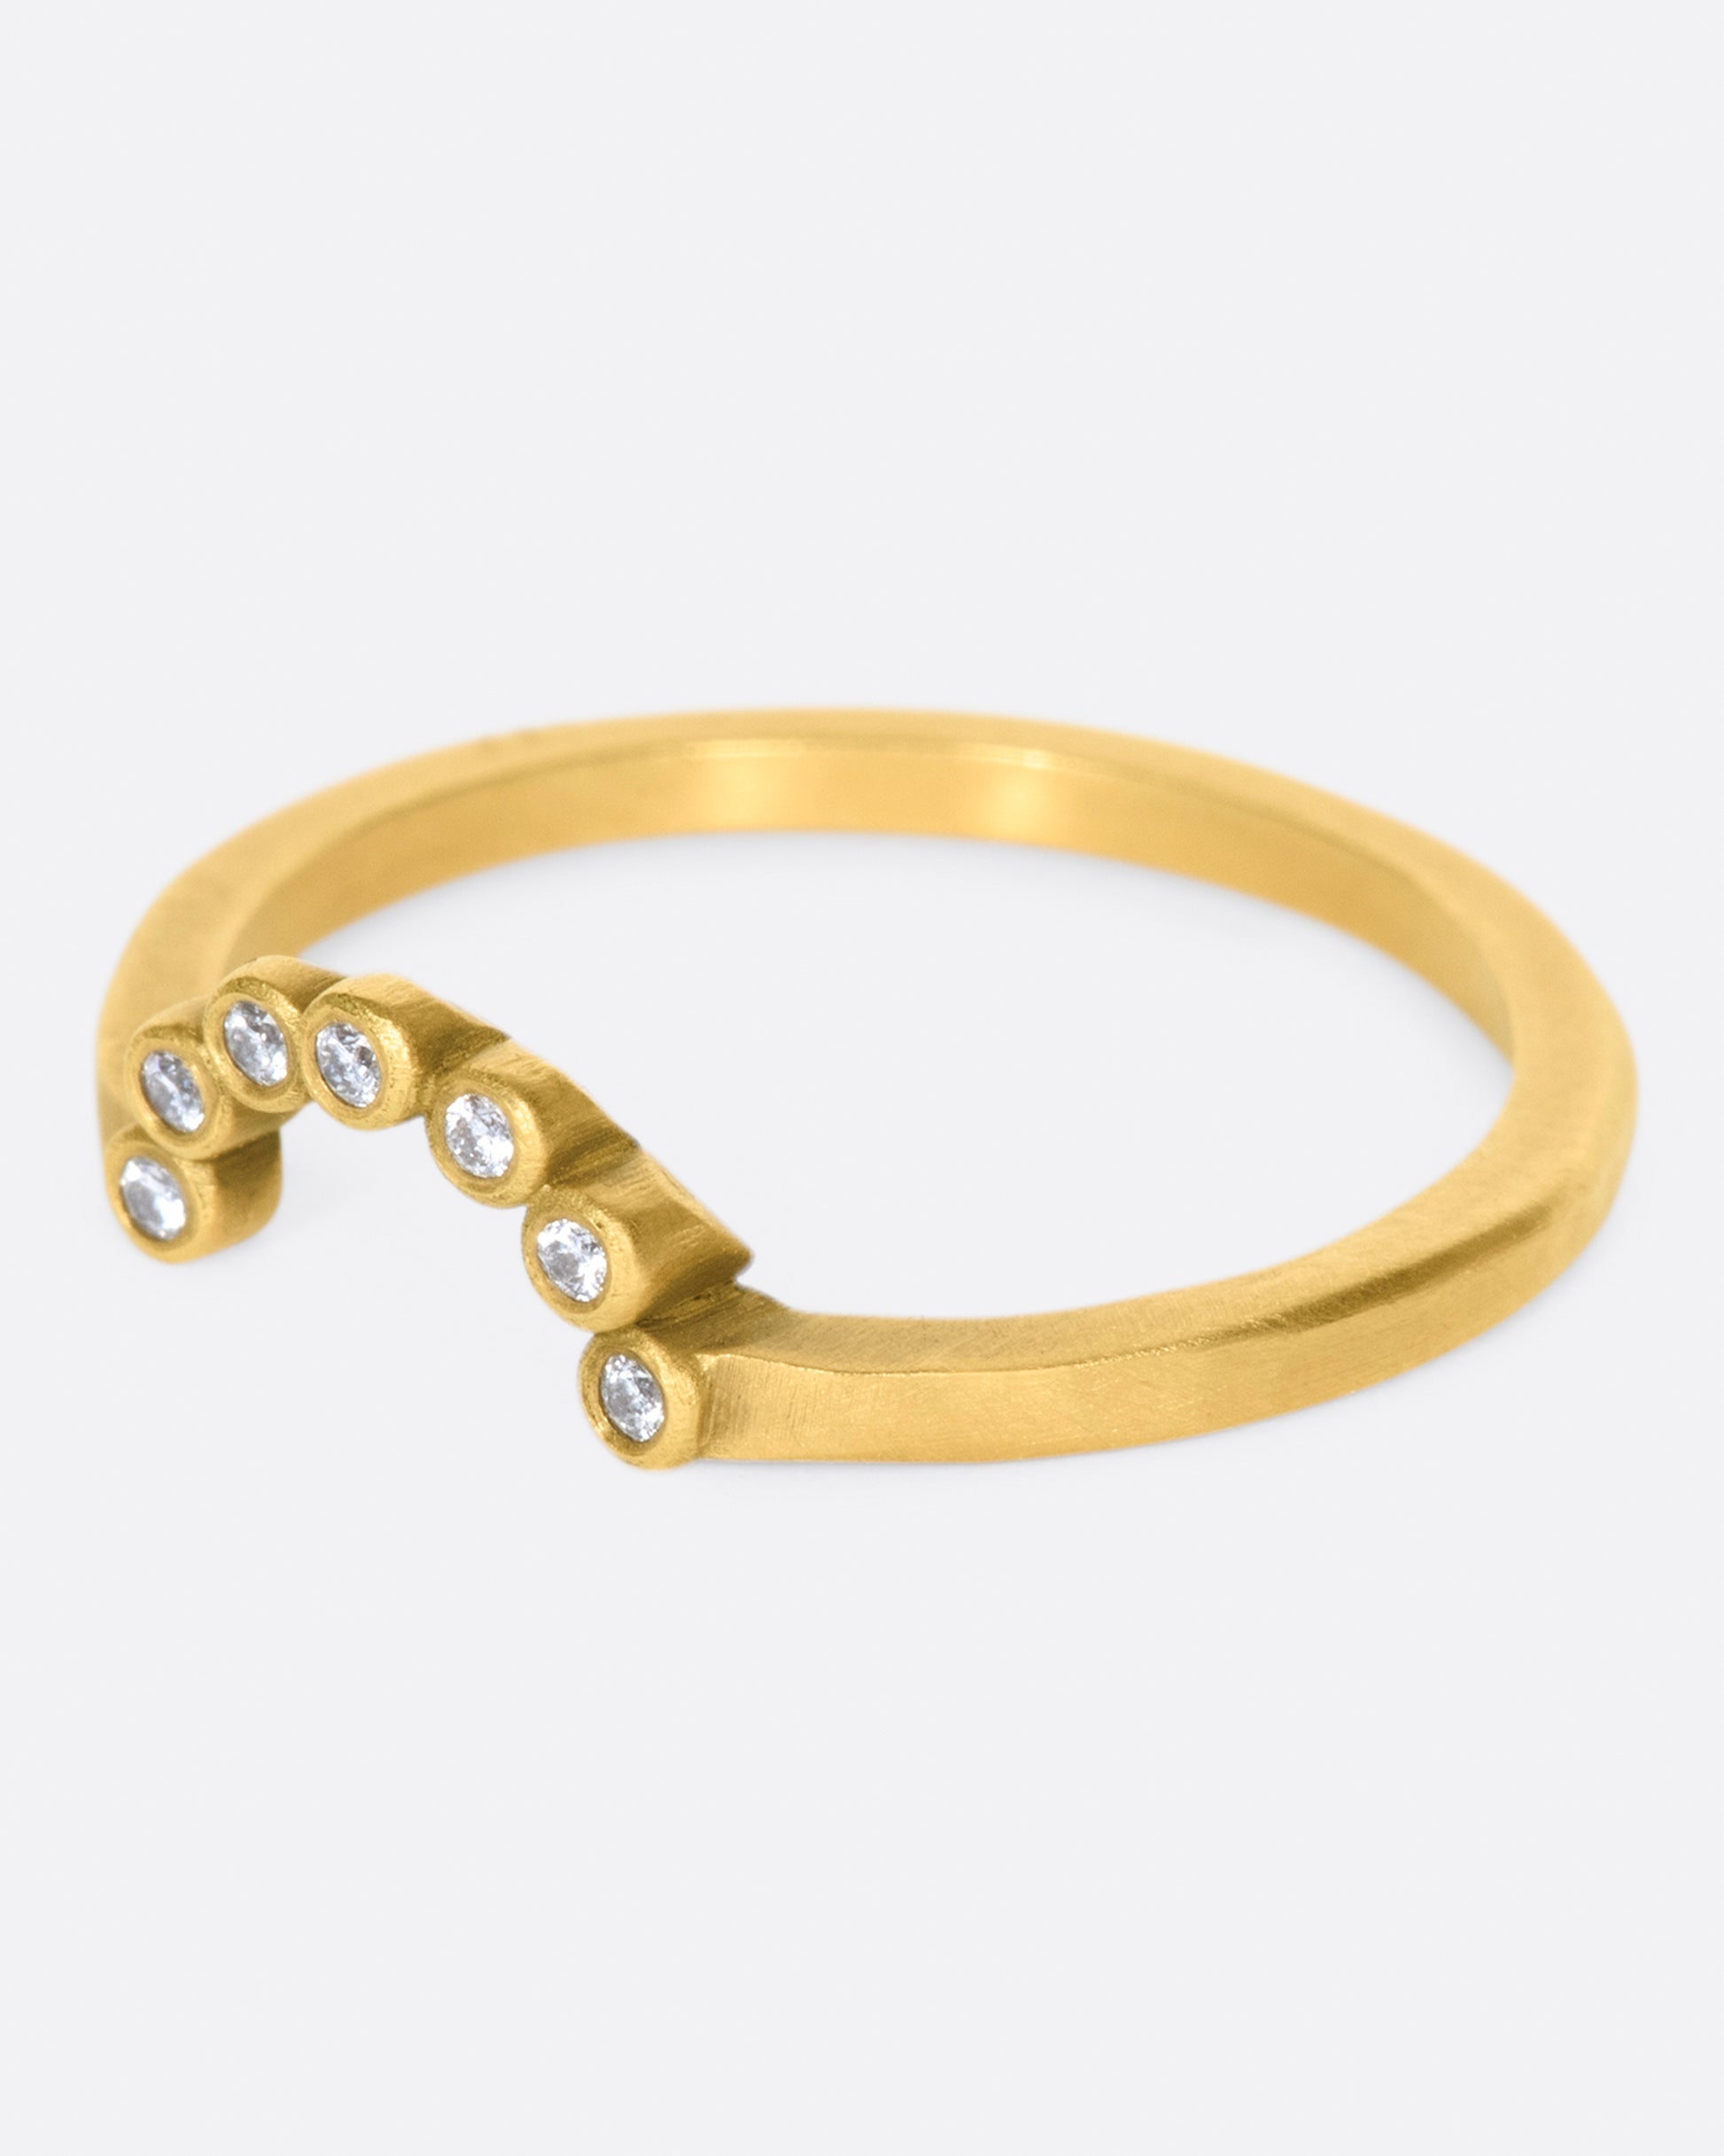 A matte gold ring with an arc of seven bezel set diamonds.